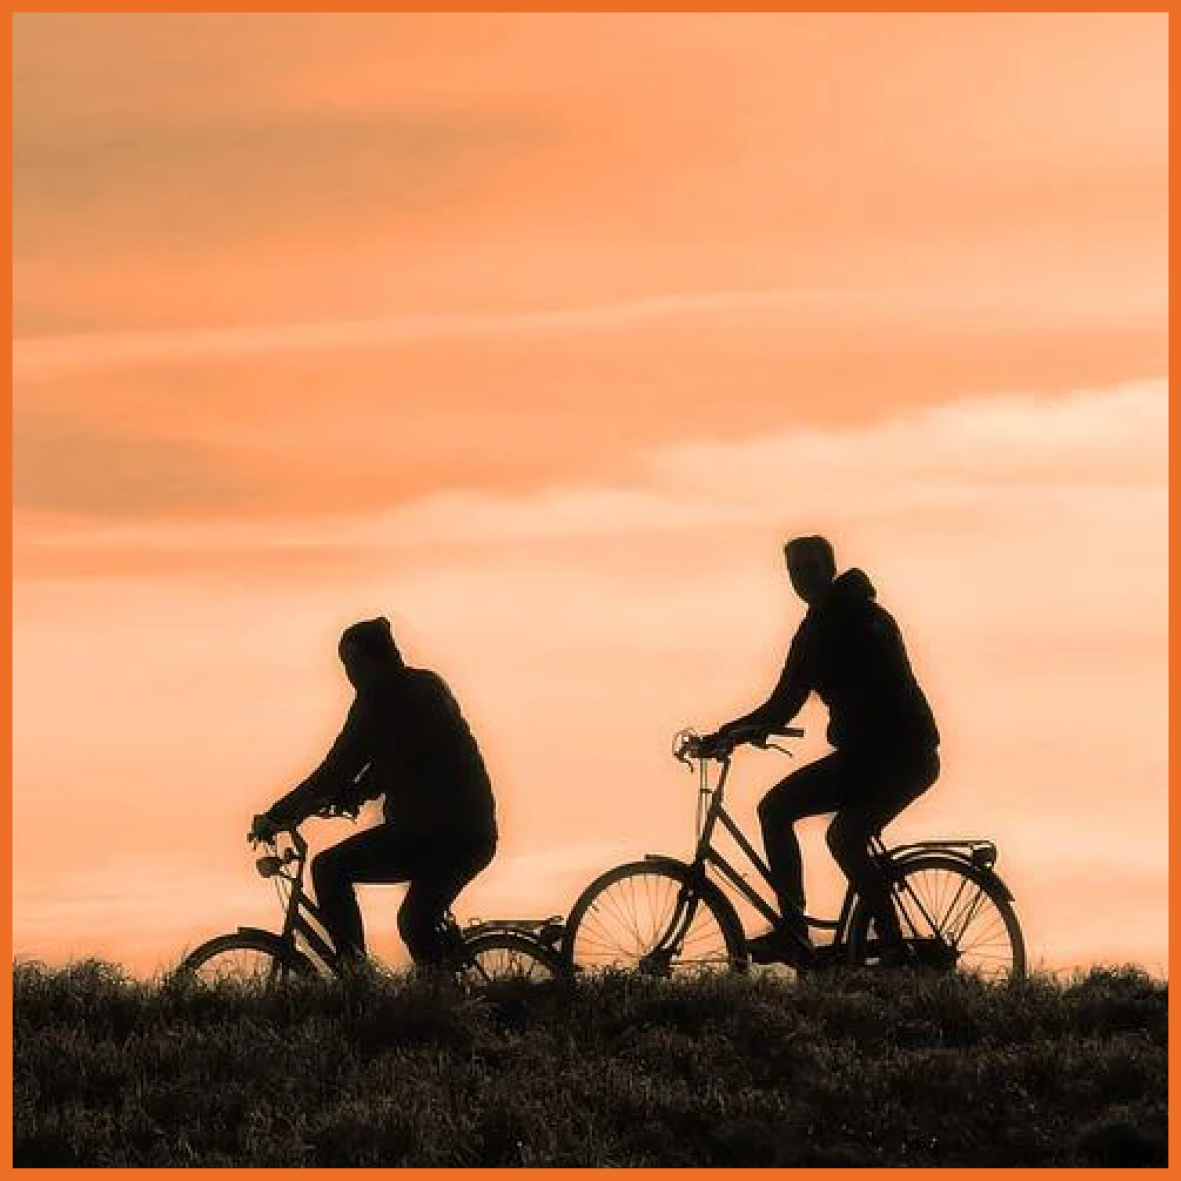 Billede af to der cykler sammen.